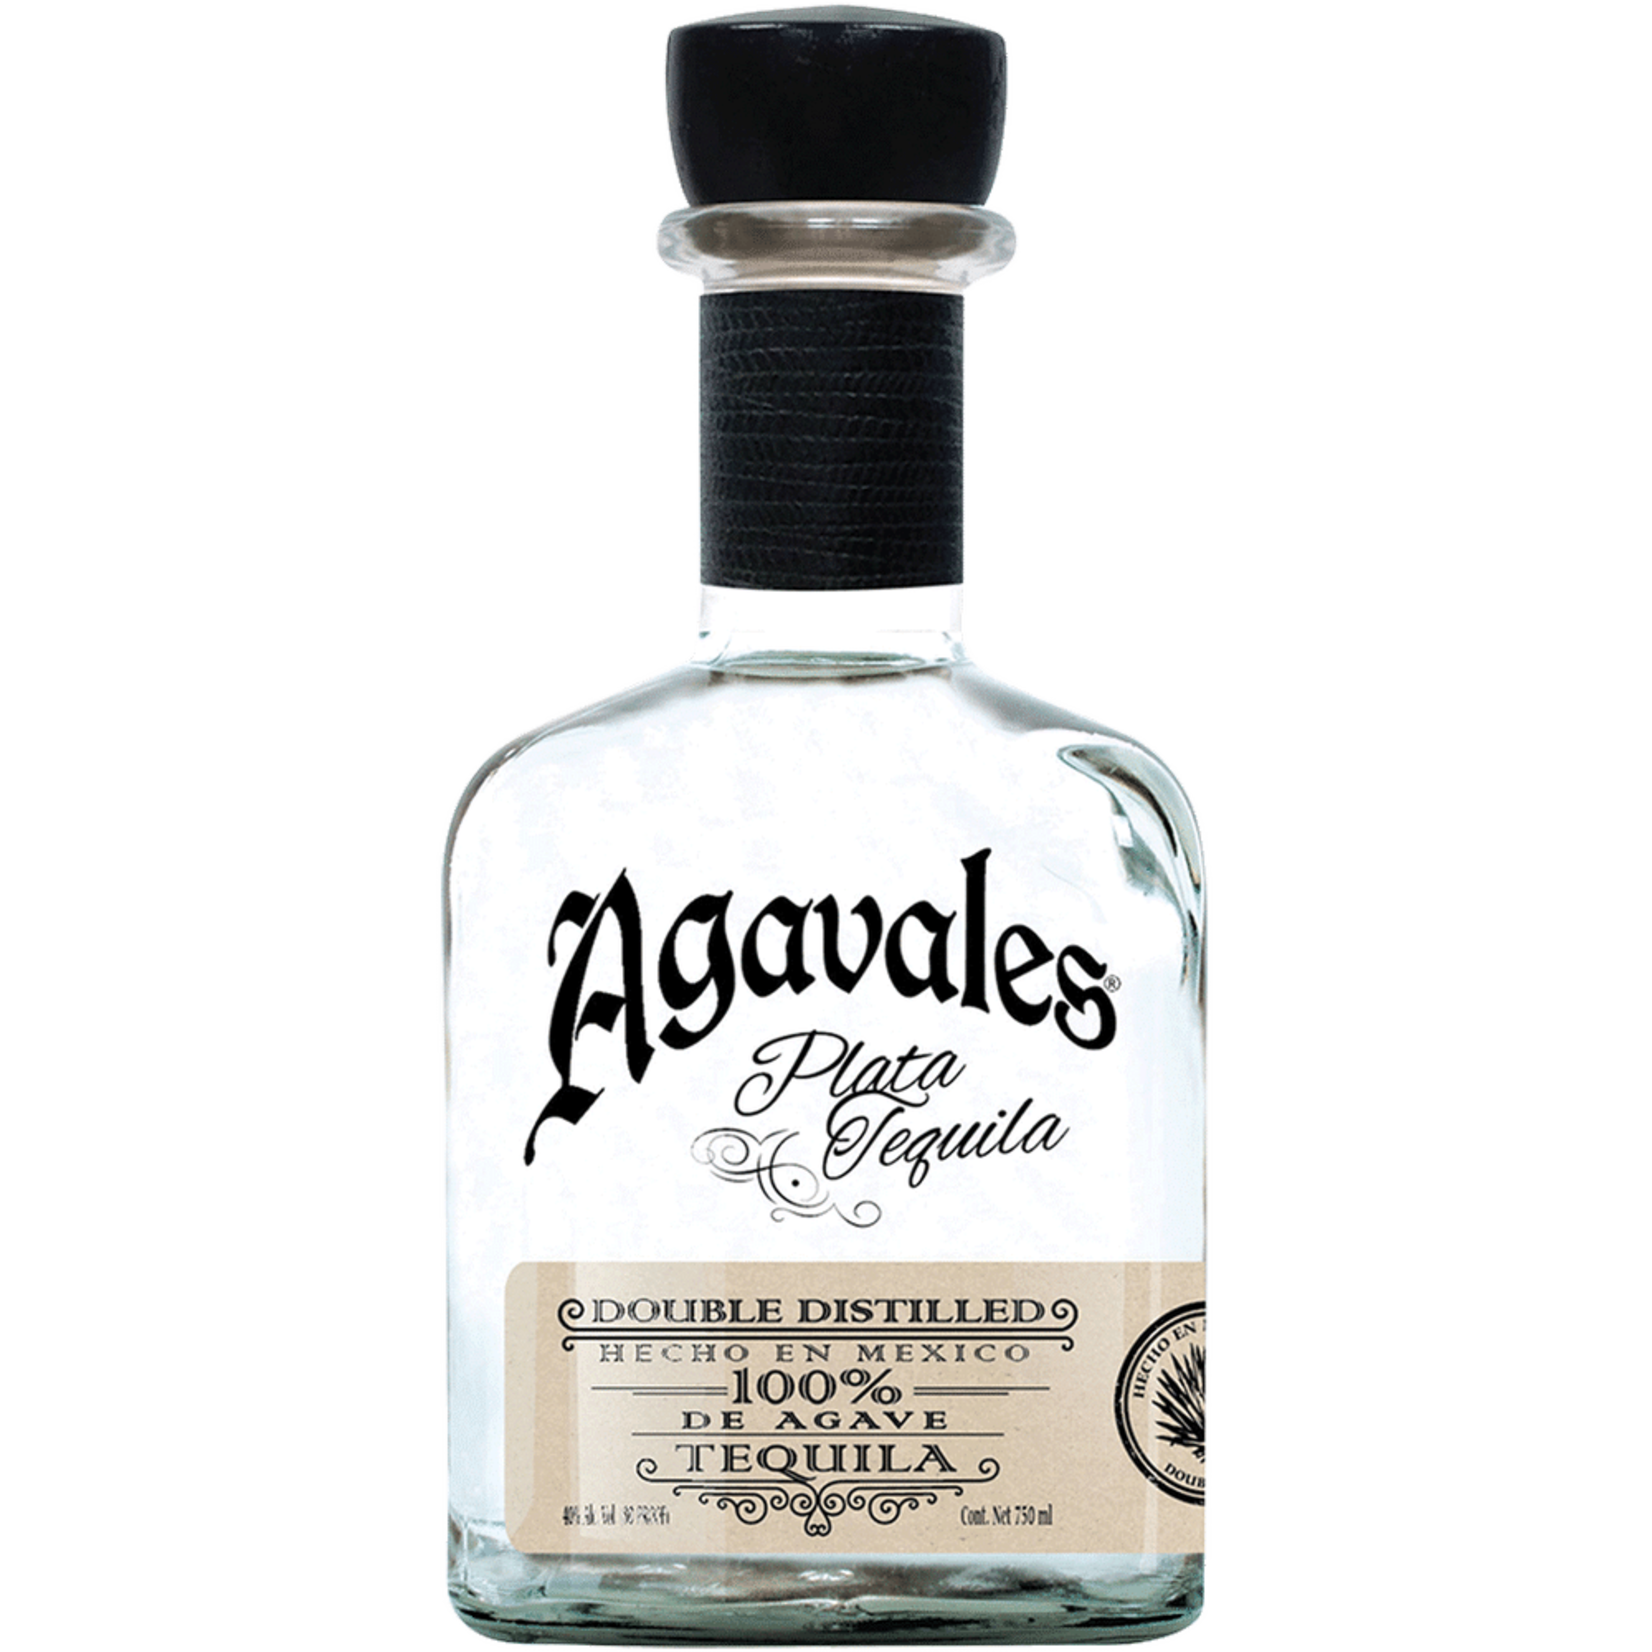 Agavales Premium Platinum Silver Tequila 80Proof 750ml